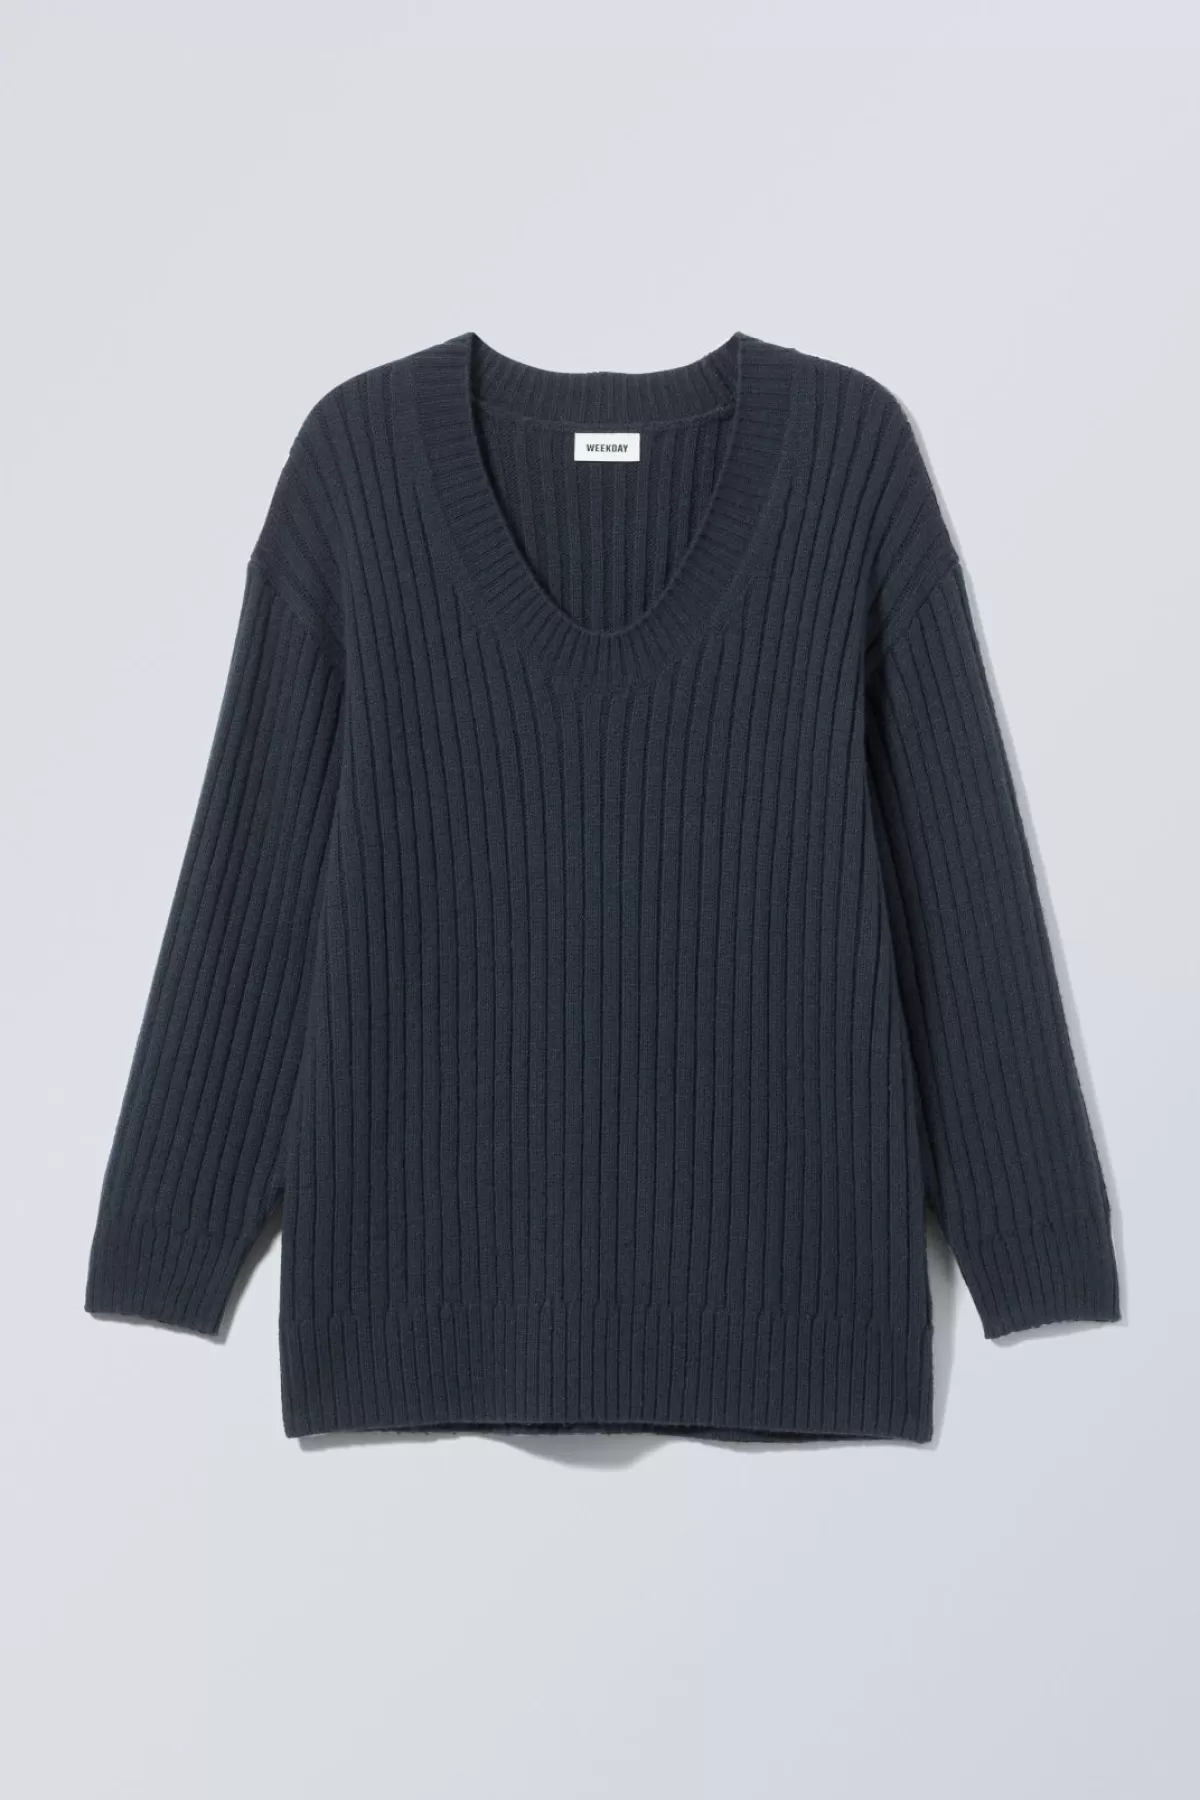 Weekday Eden Oversized Wool Blend Sweater Dark Navy Fashion